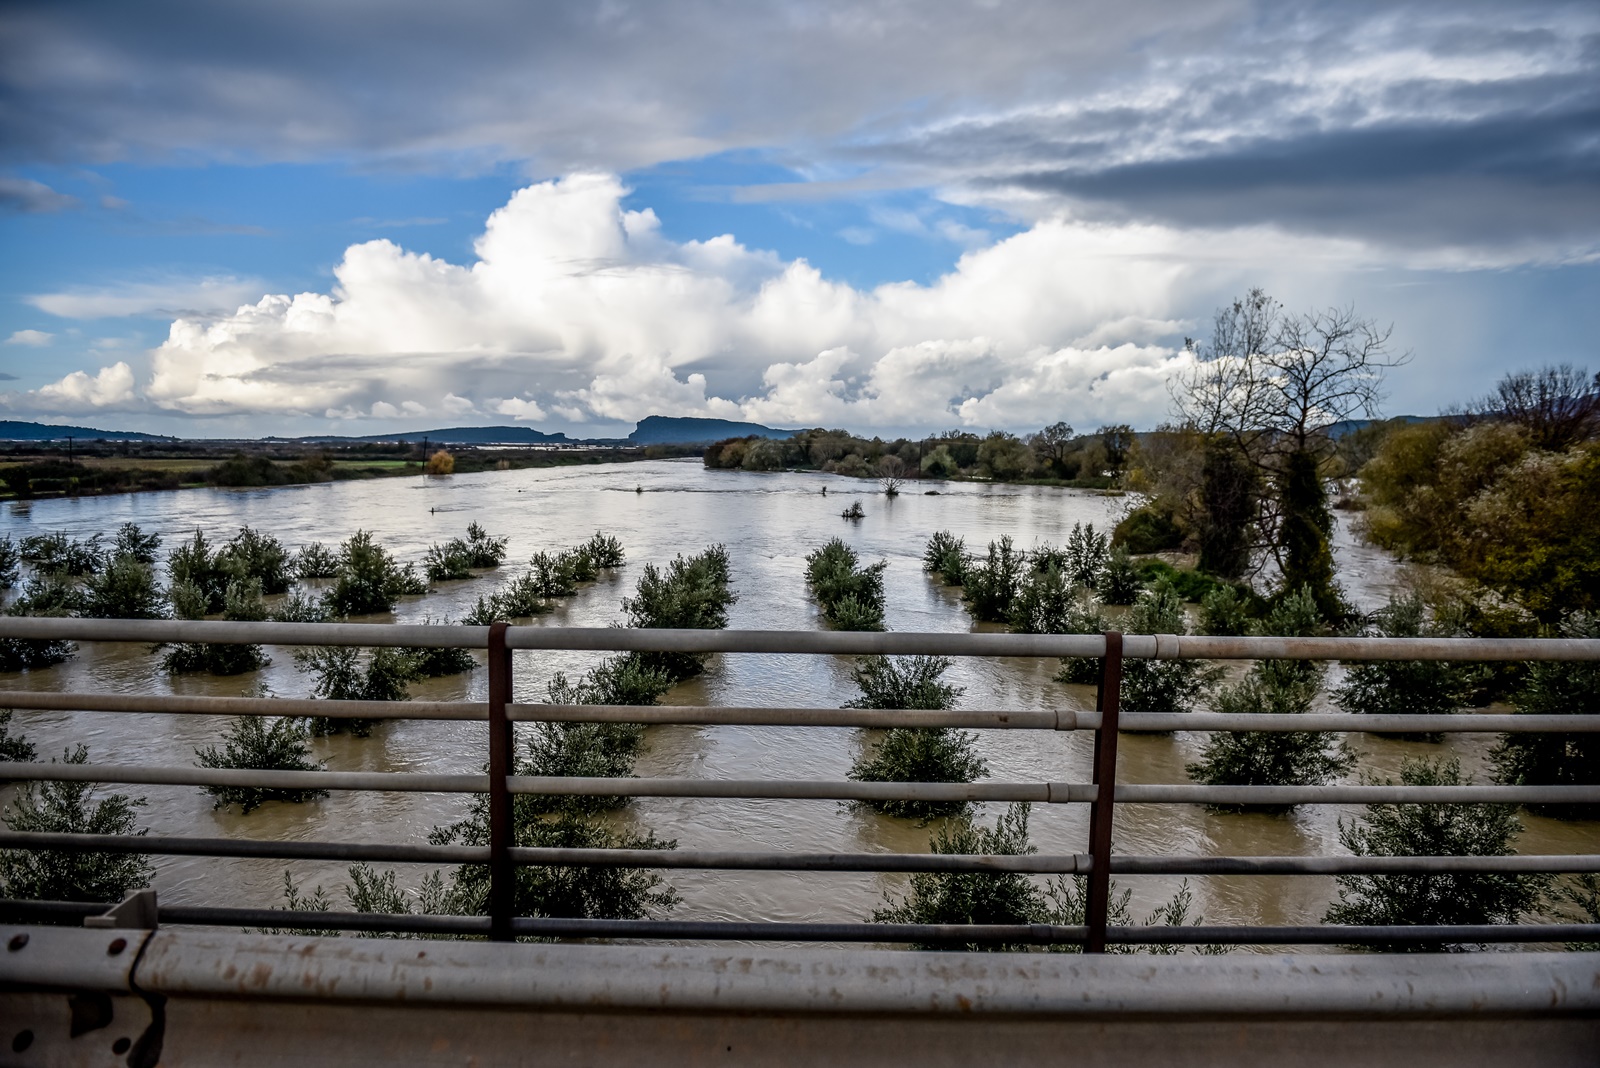 Κακοκαιρία Θεσσαλονίκη: Σαρωτικό πέρασμα, πλημμύρισαν δρόμοι και σπίτια